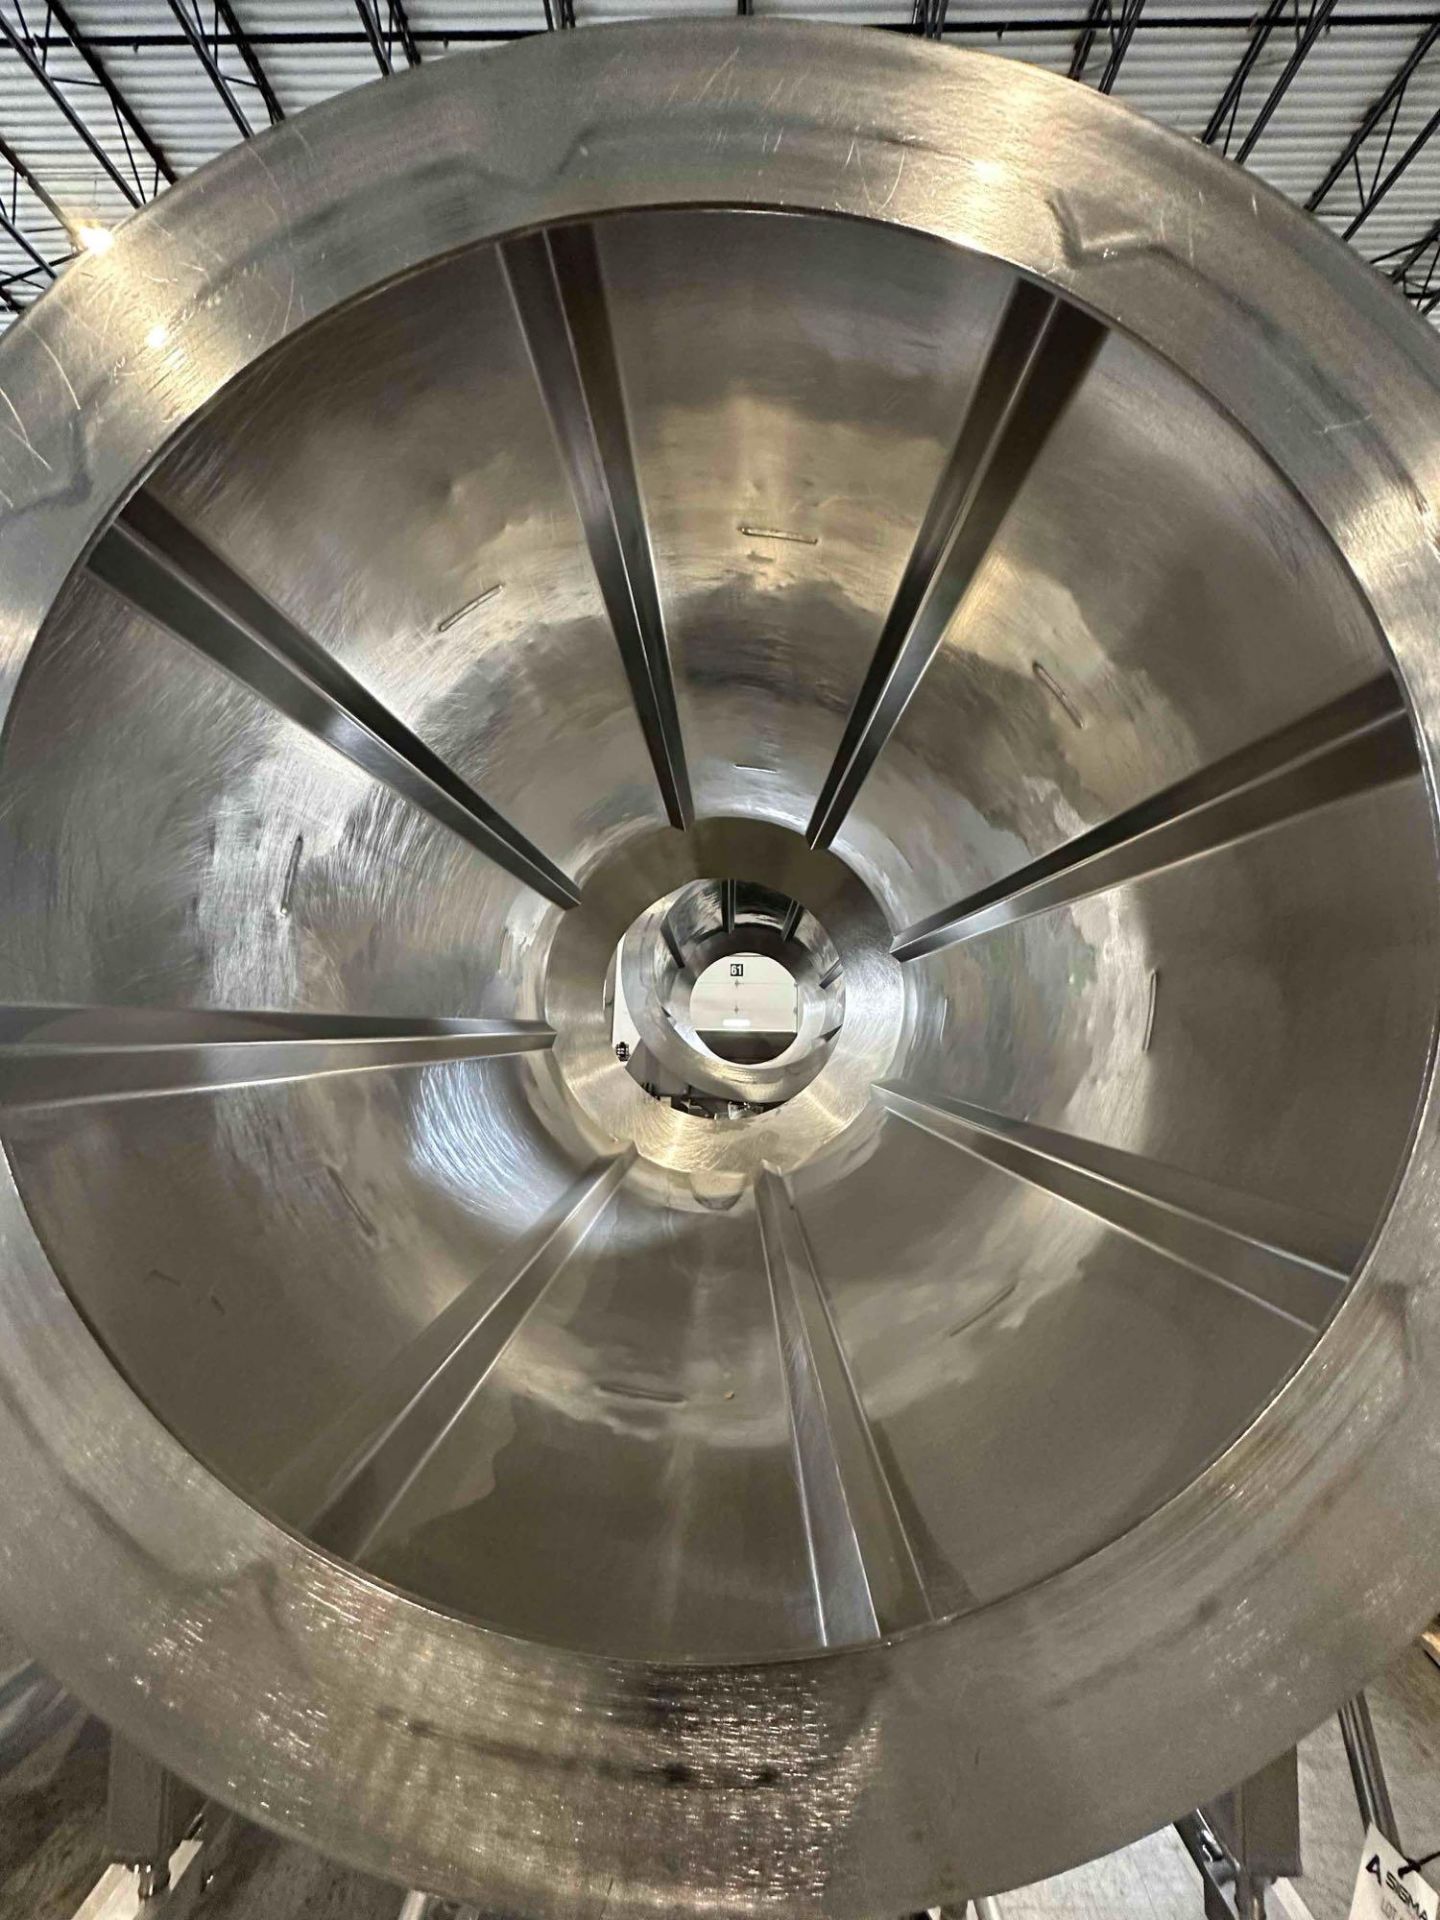 Tweet Garot 32" D Stainless Steel Seasoning Drum W/ 1.5 HP Motor - Image 3 of 5